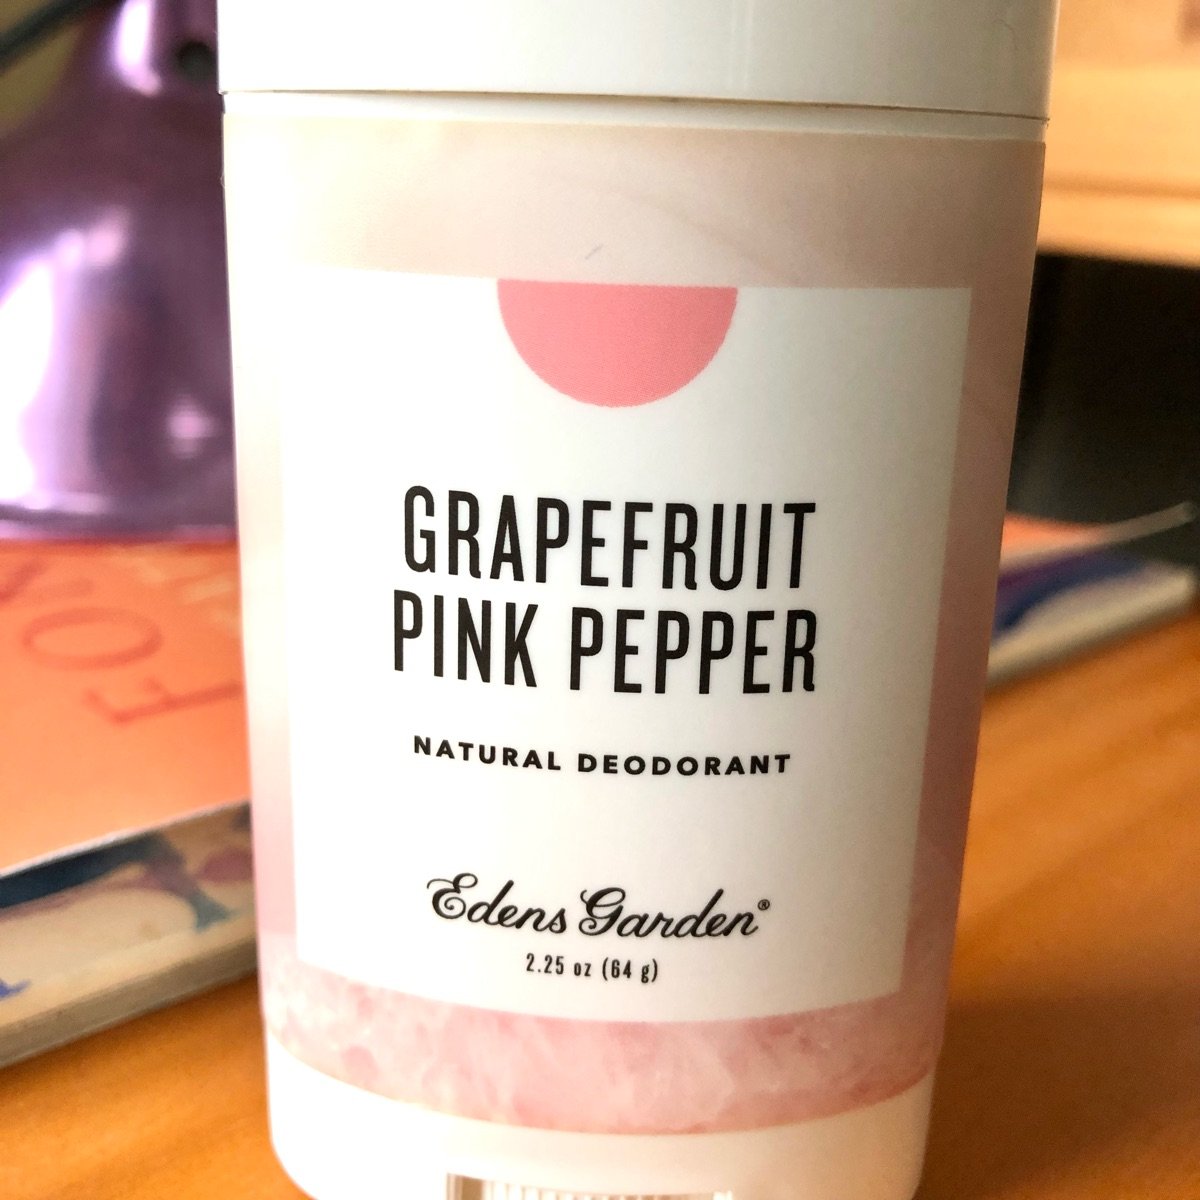 Edens Garden Pink Pepper Essential Oil